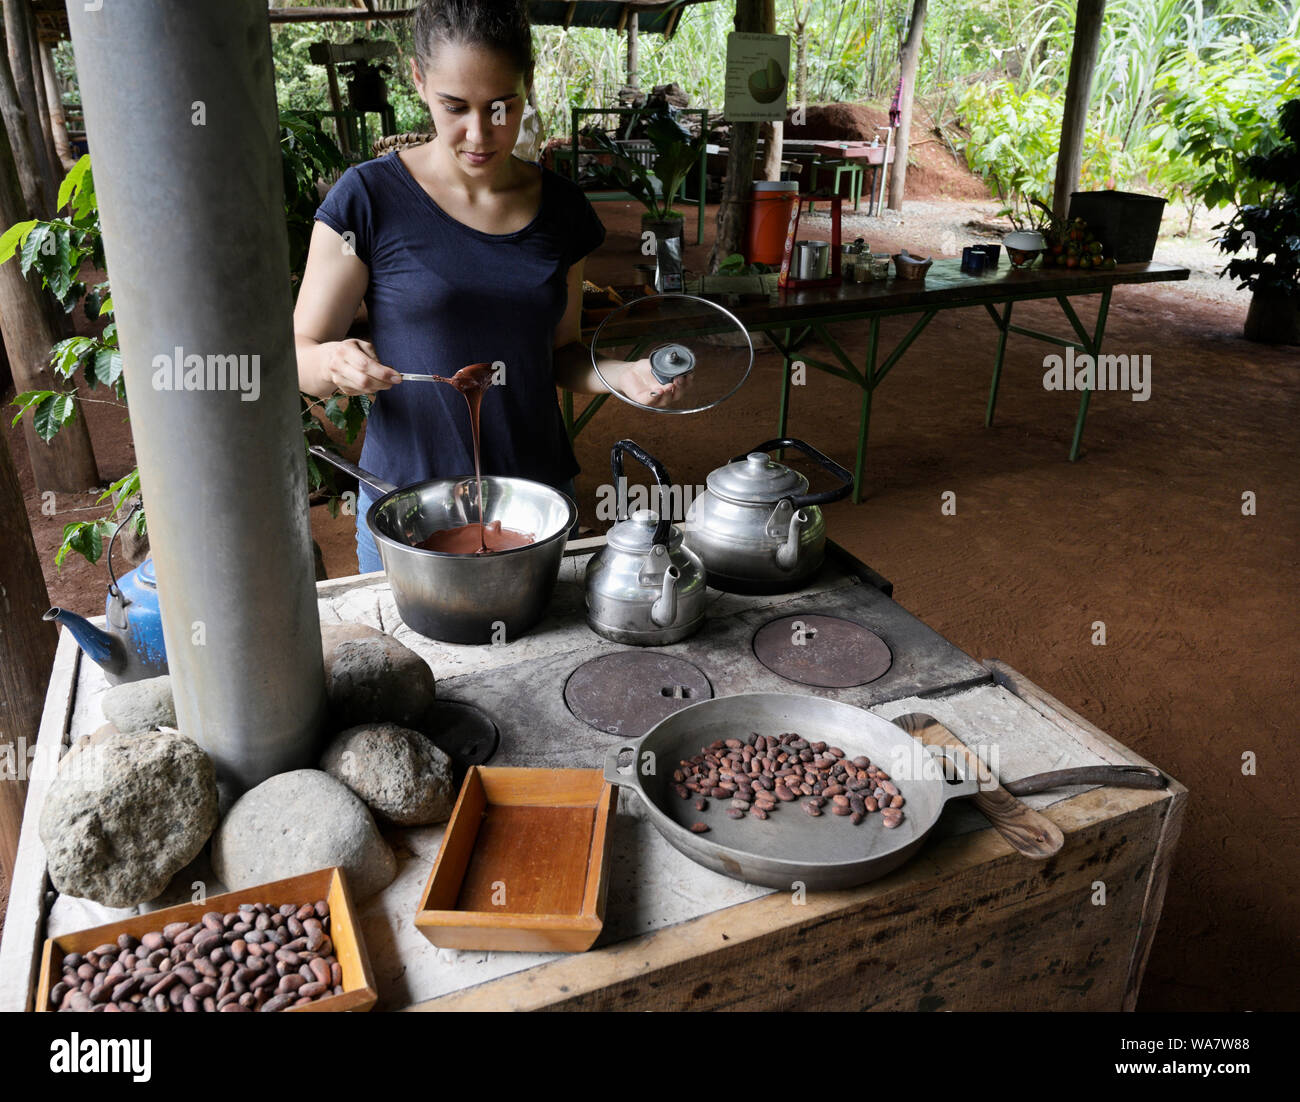 Herstellung von Schokolade. Frau auf Costa Rica Kakao aus Kakaobohnen Stockfoto